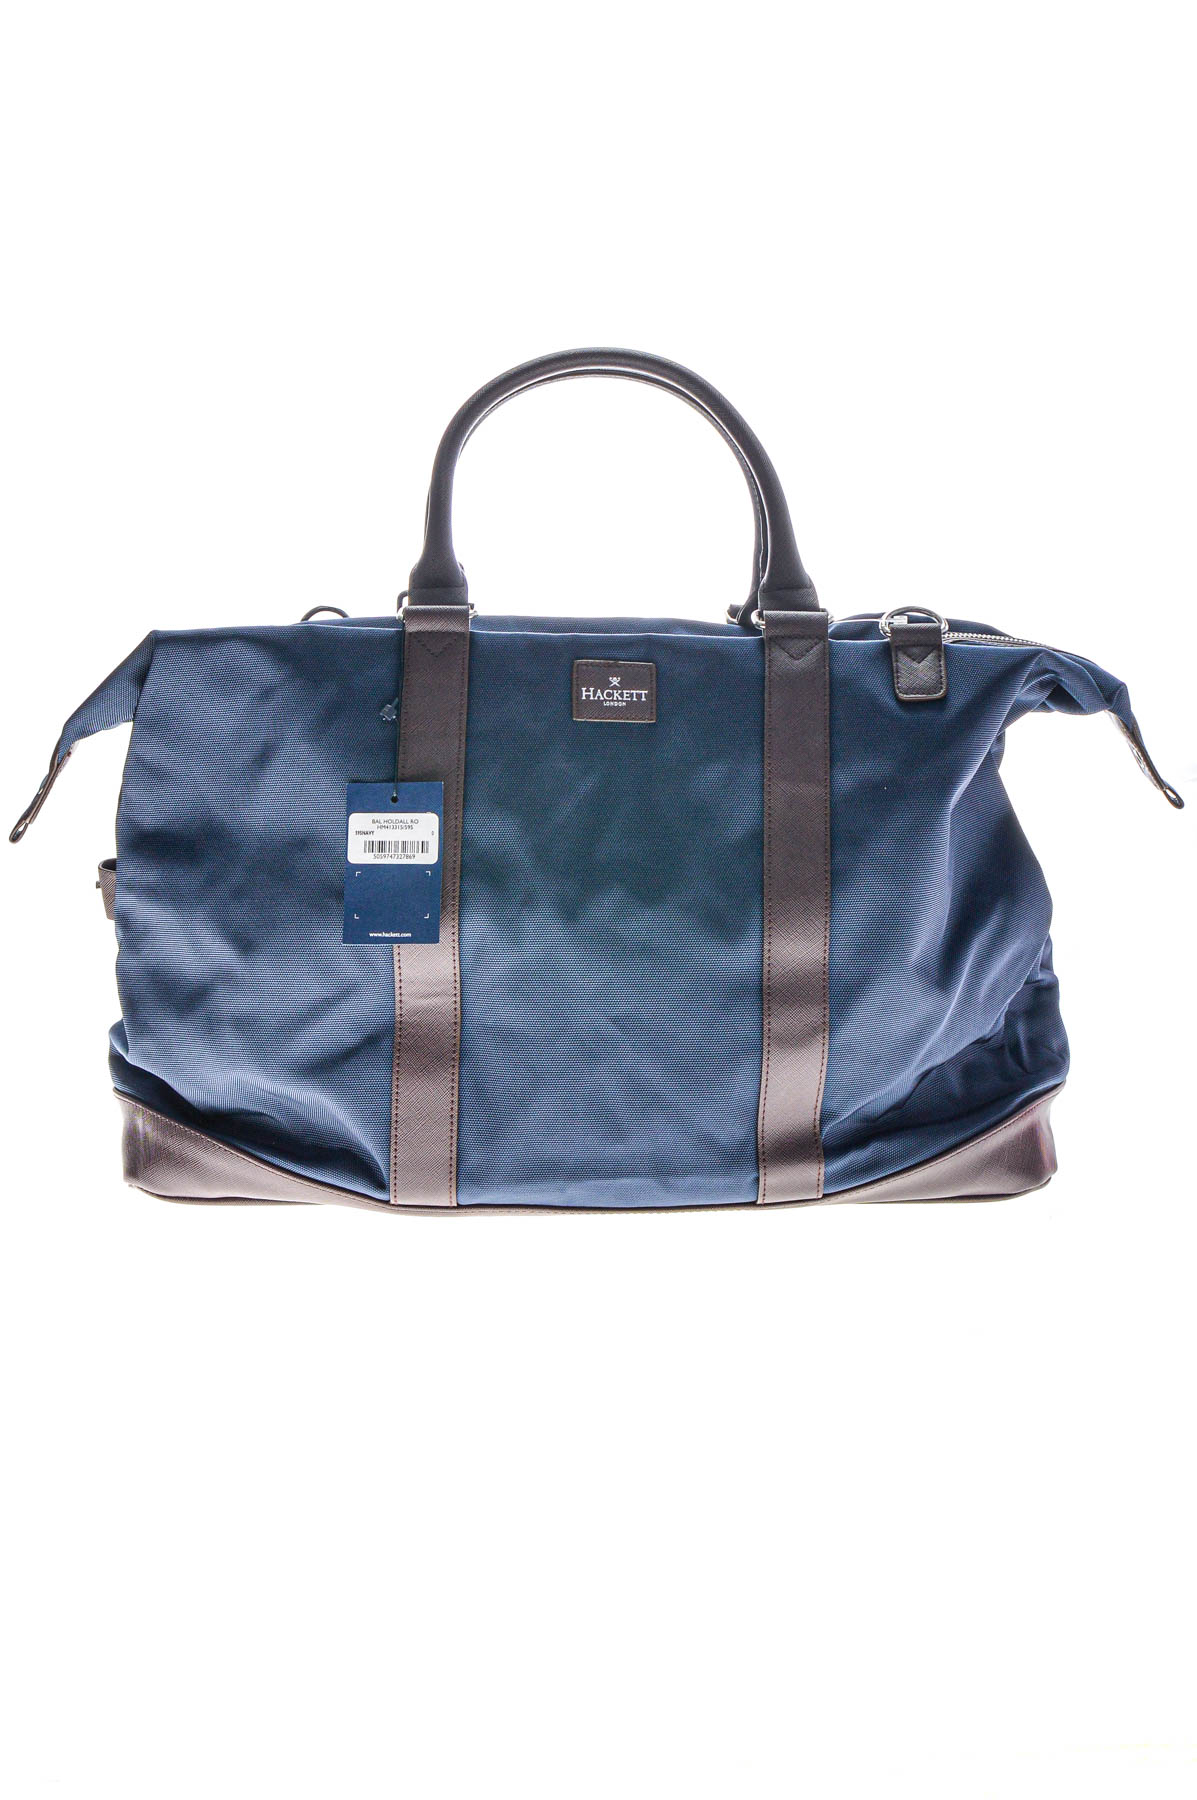 Travel bag - Hackett - 0